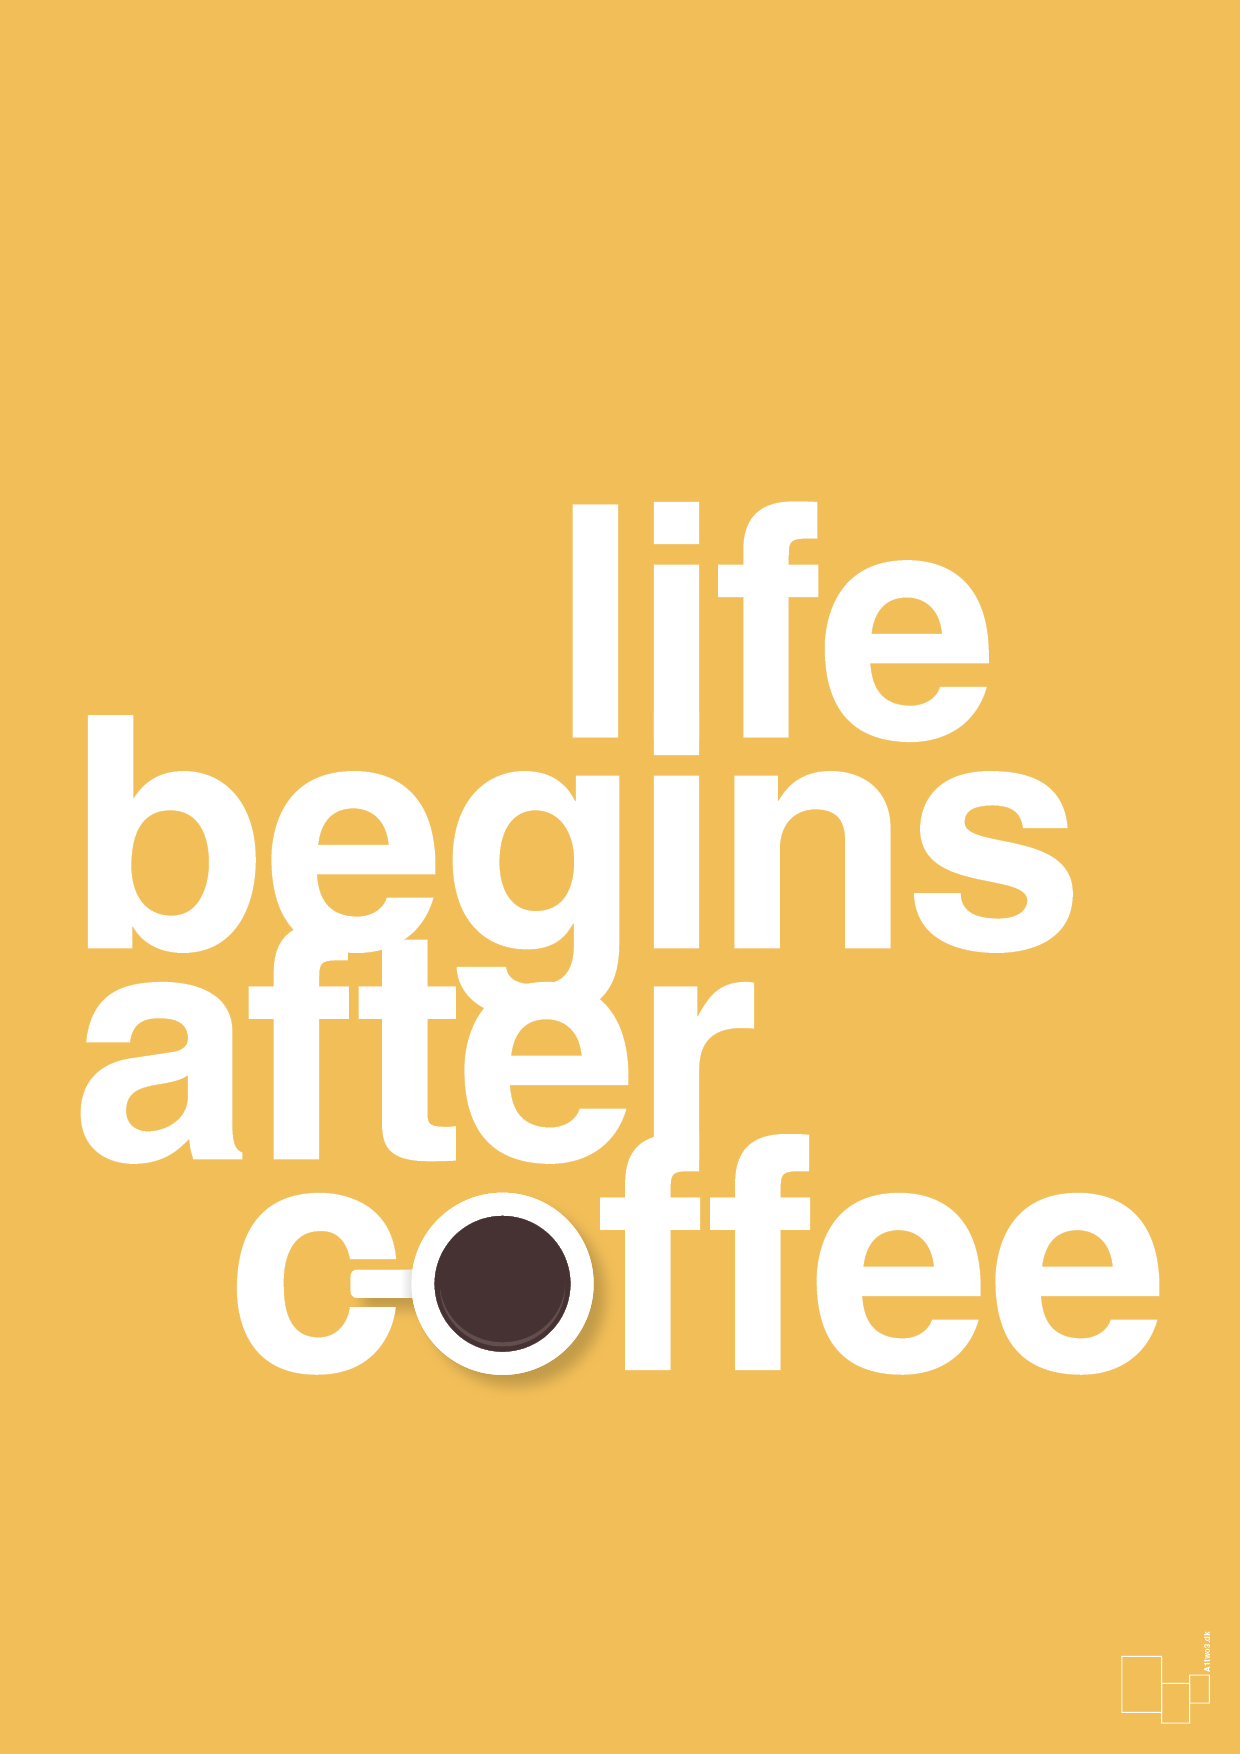 life begins after coffee - Plakat med Mad & Drikke i Honeycomb